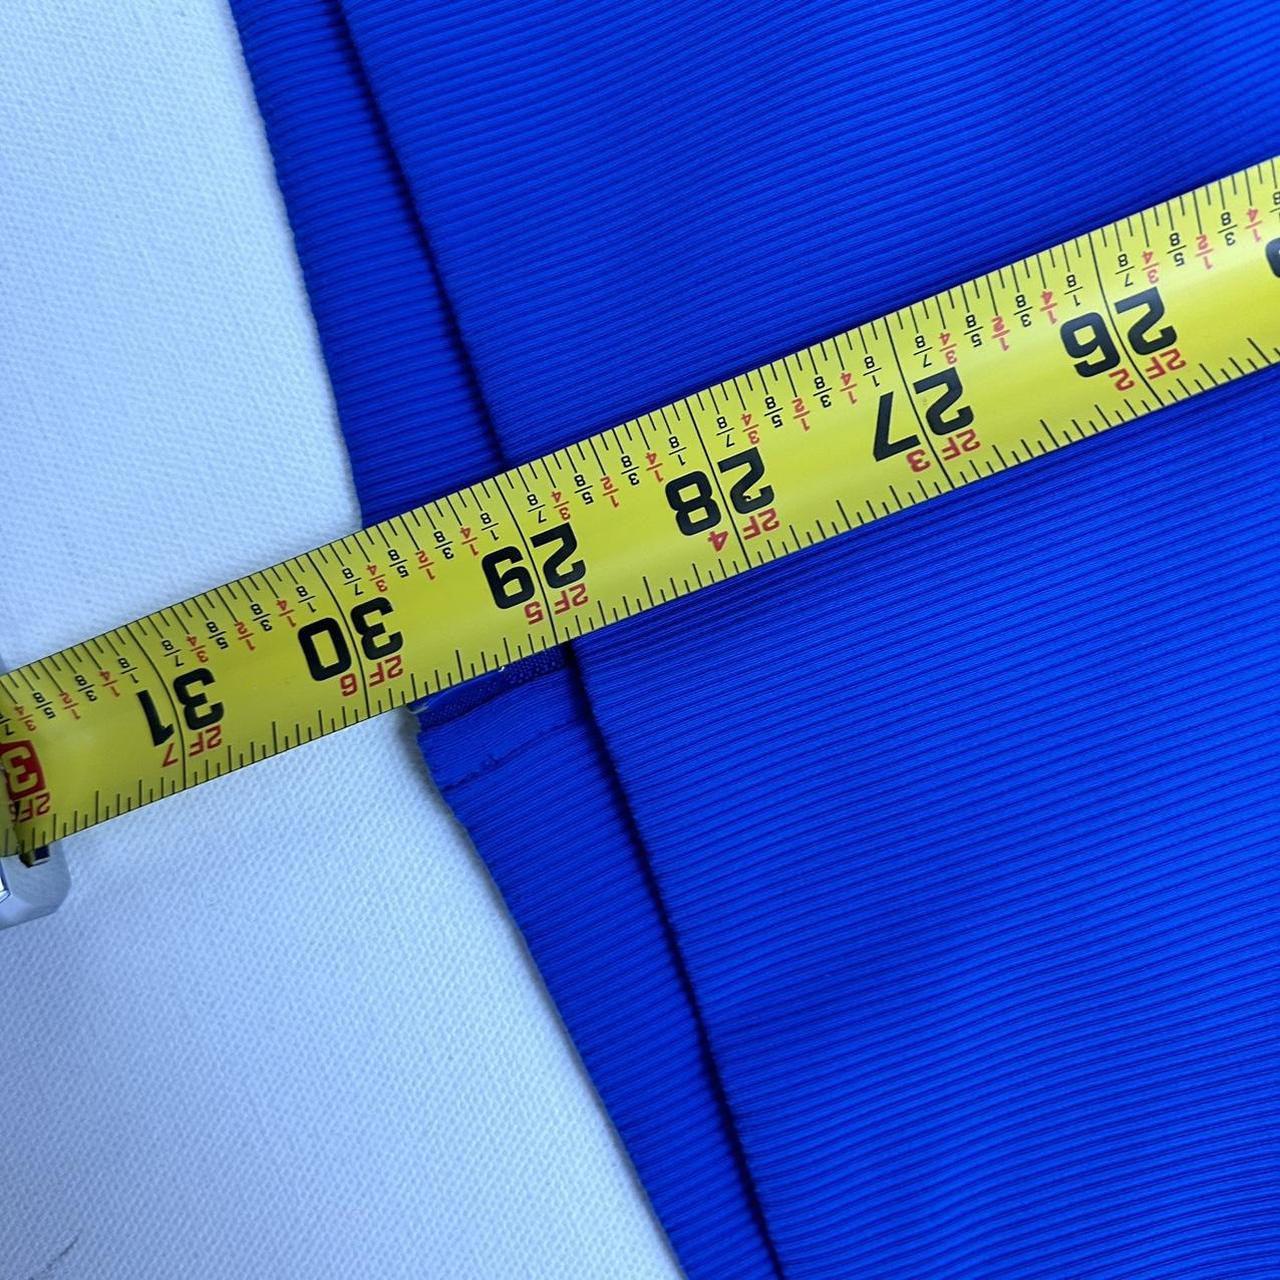 lululemon blue double zip bbl jacket Premium - Depop